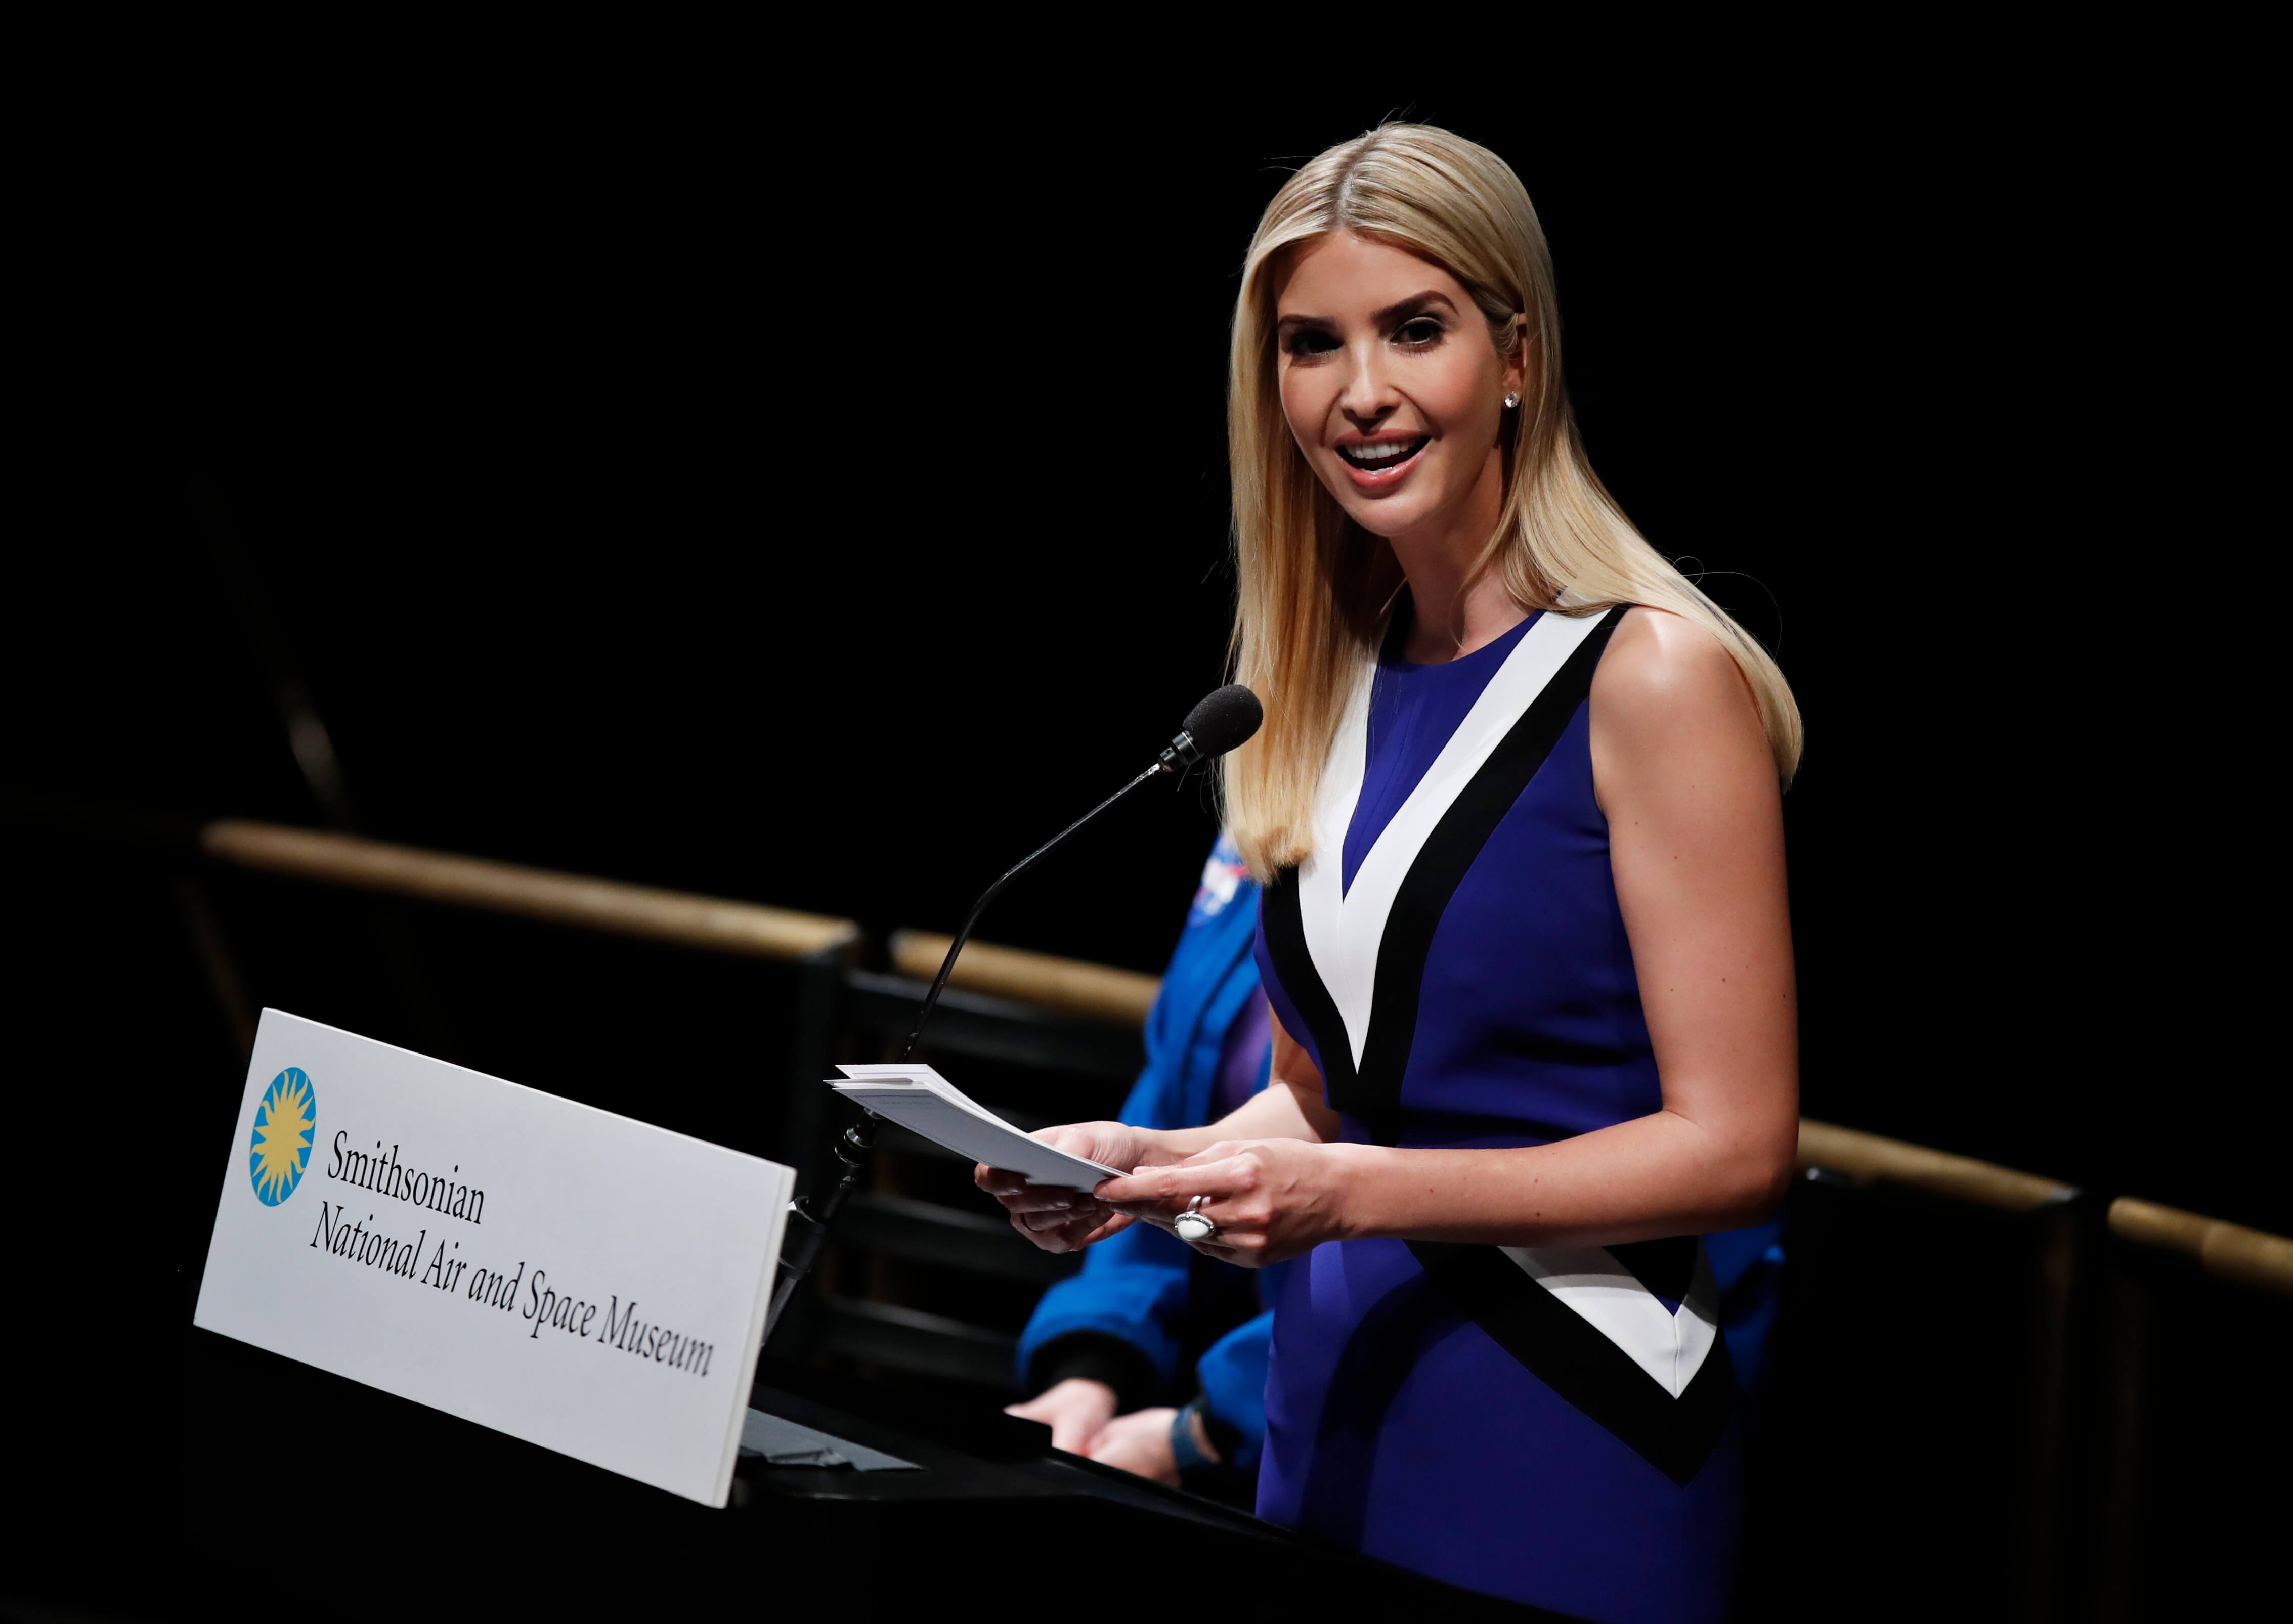 La hija del presidente Donald Trump anunció que fungirá como empleada sin goce de sueldo en la Casa Blanca.